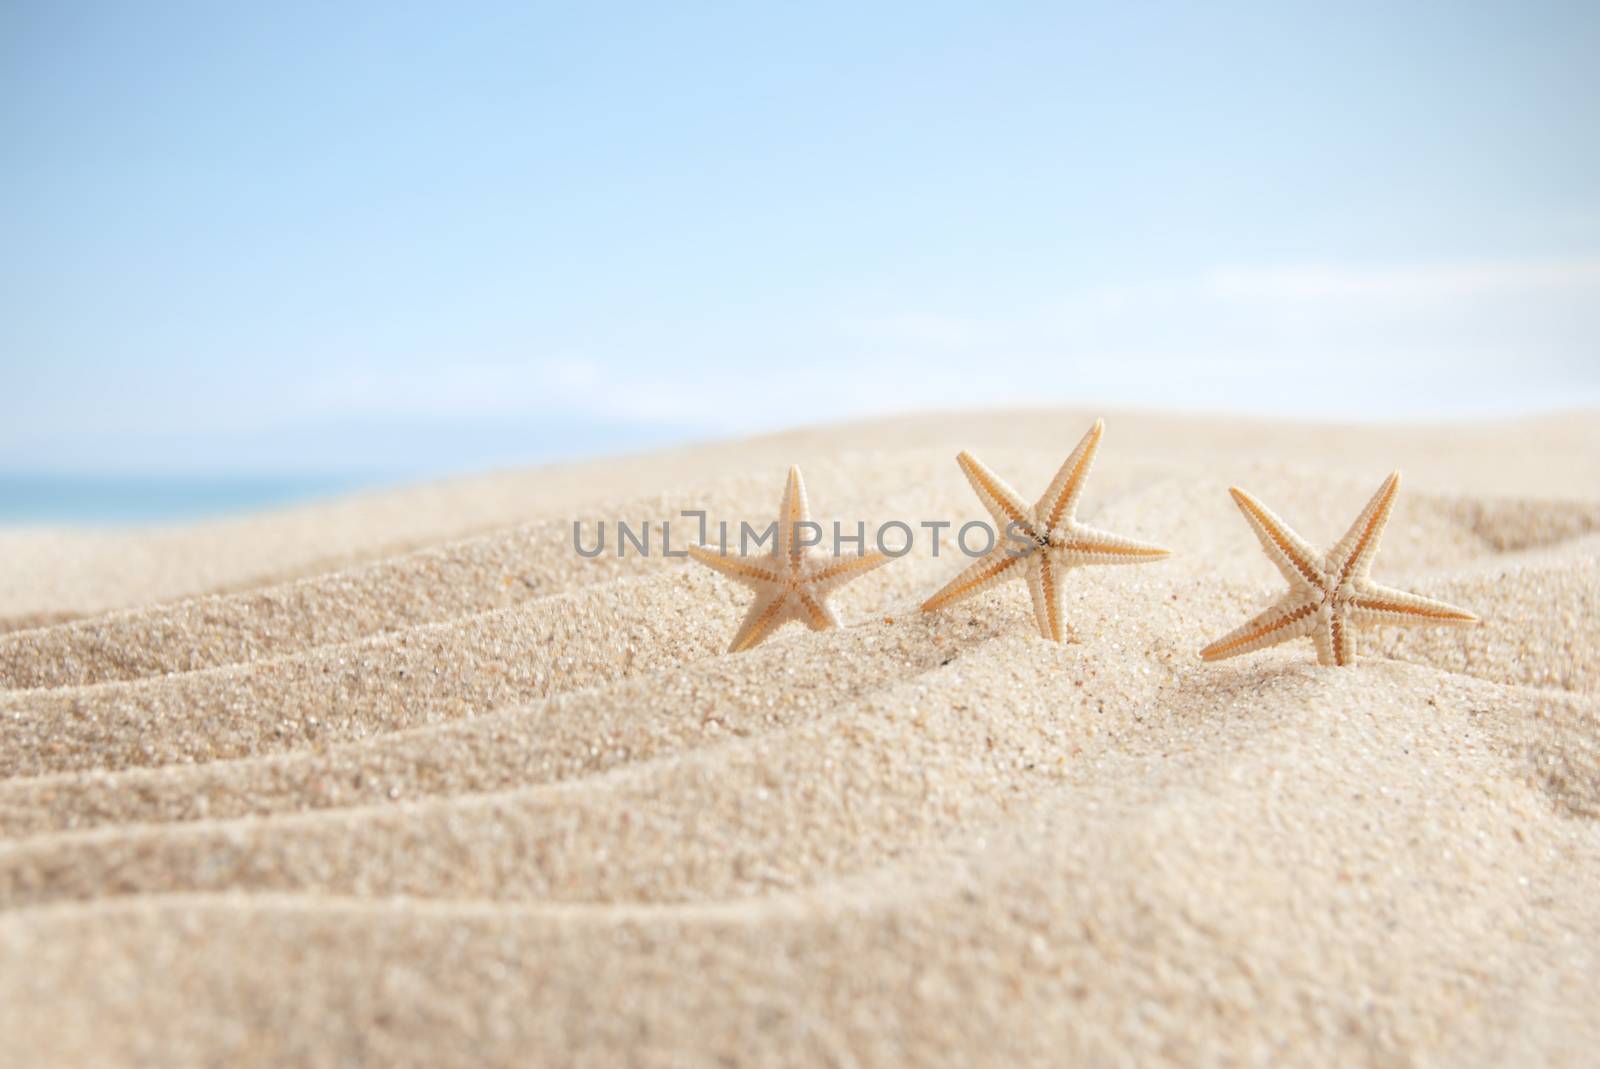 Starfish on a sandy beach 